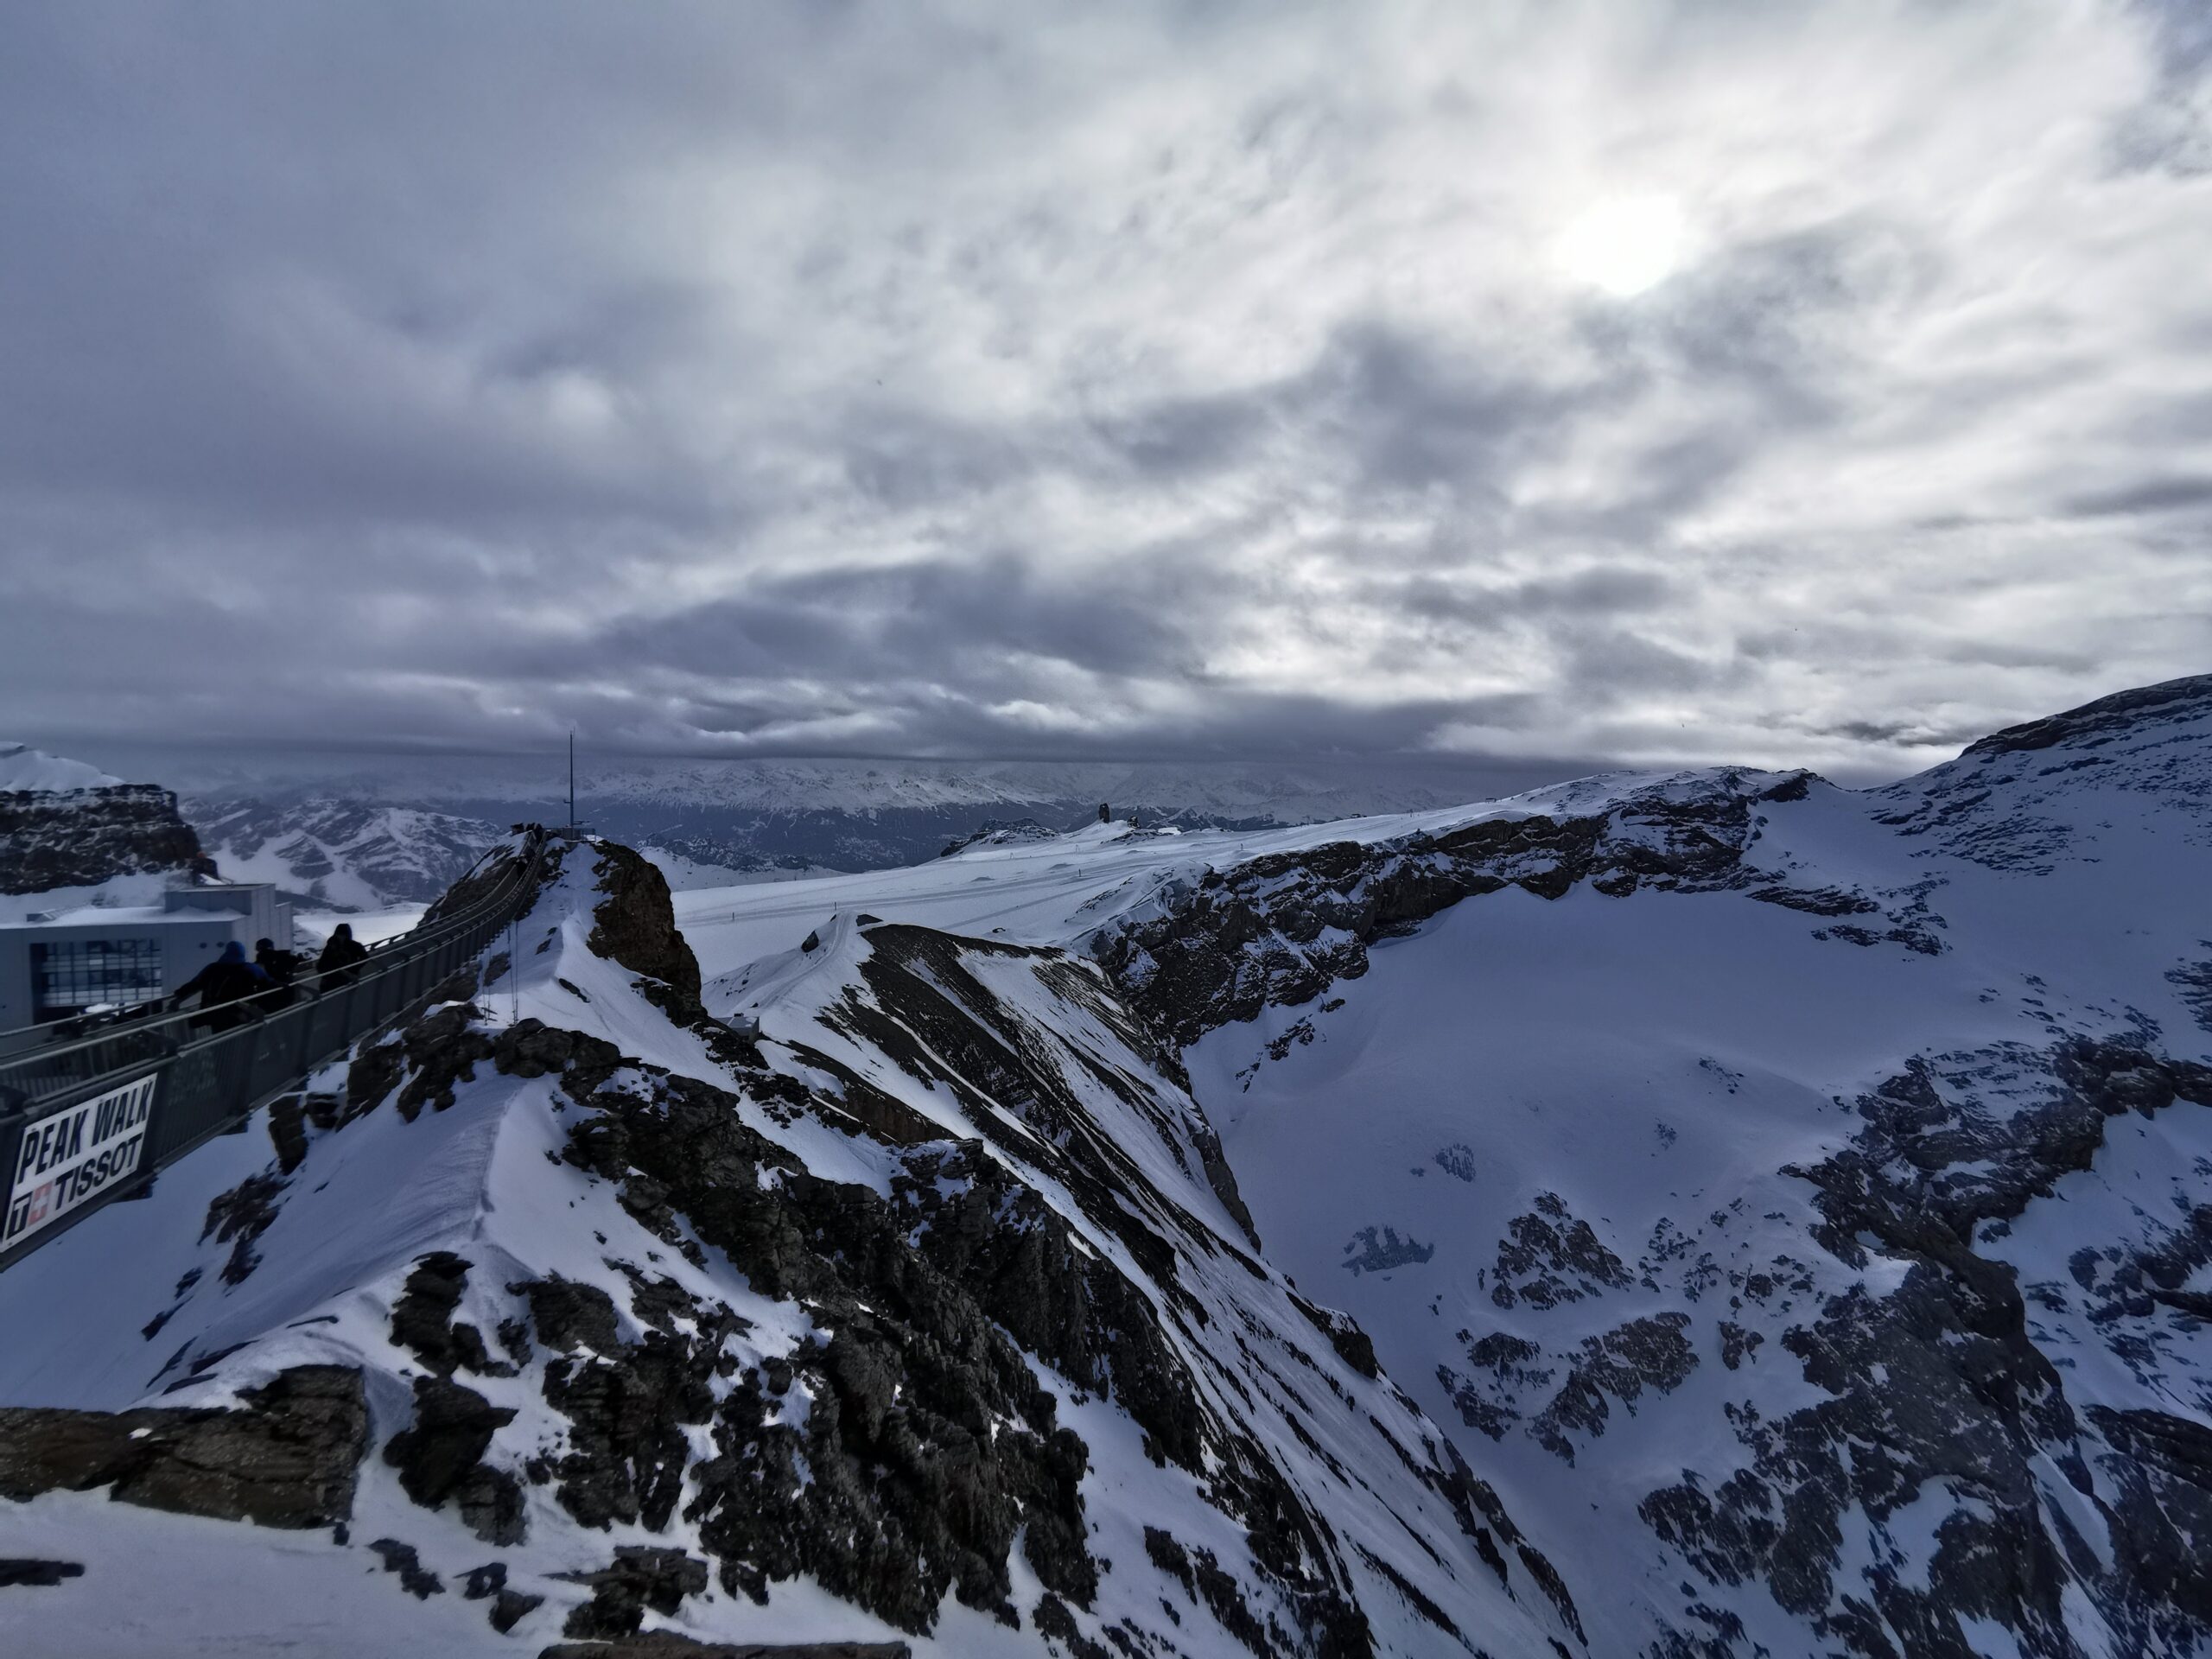 Glacier 3000 - Scex Rouge, Ausblick auf die umliegenden Berge, im Vordergrund eine Hängebrücke